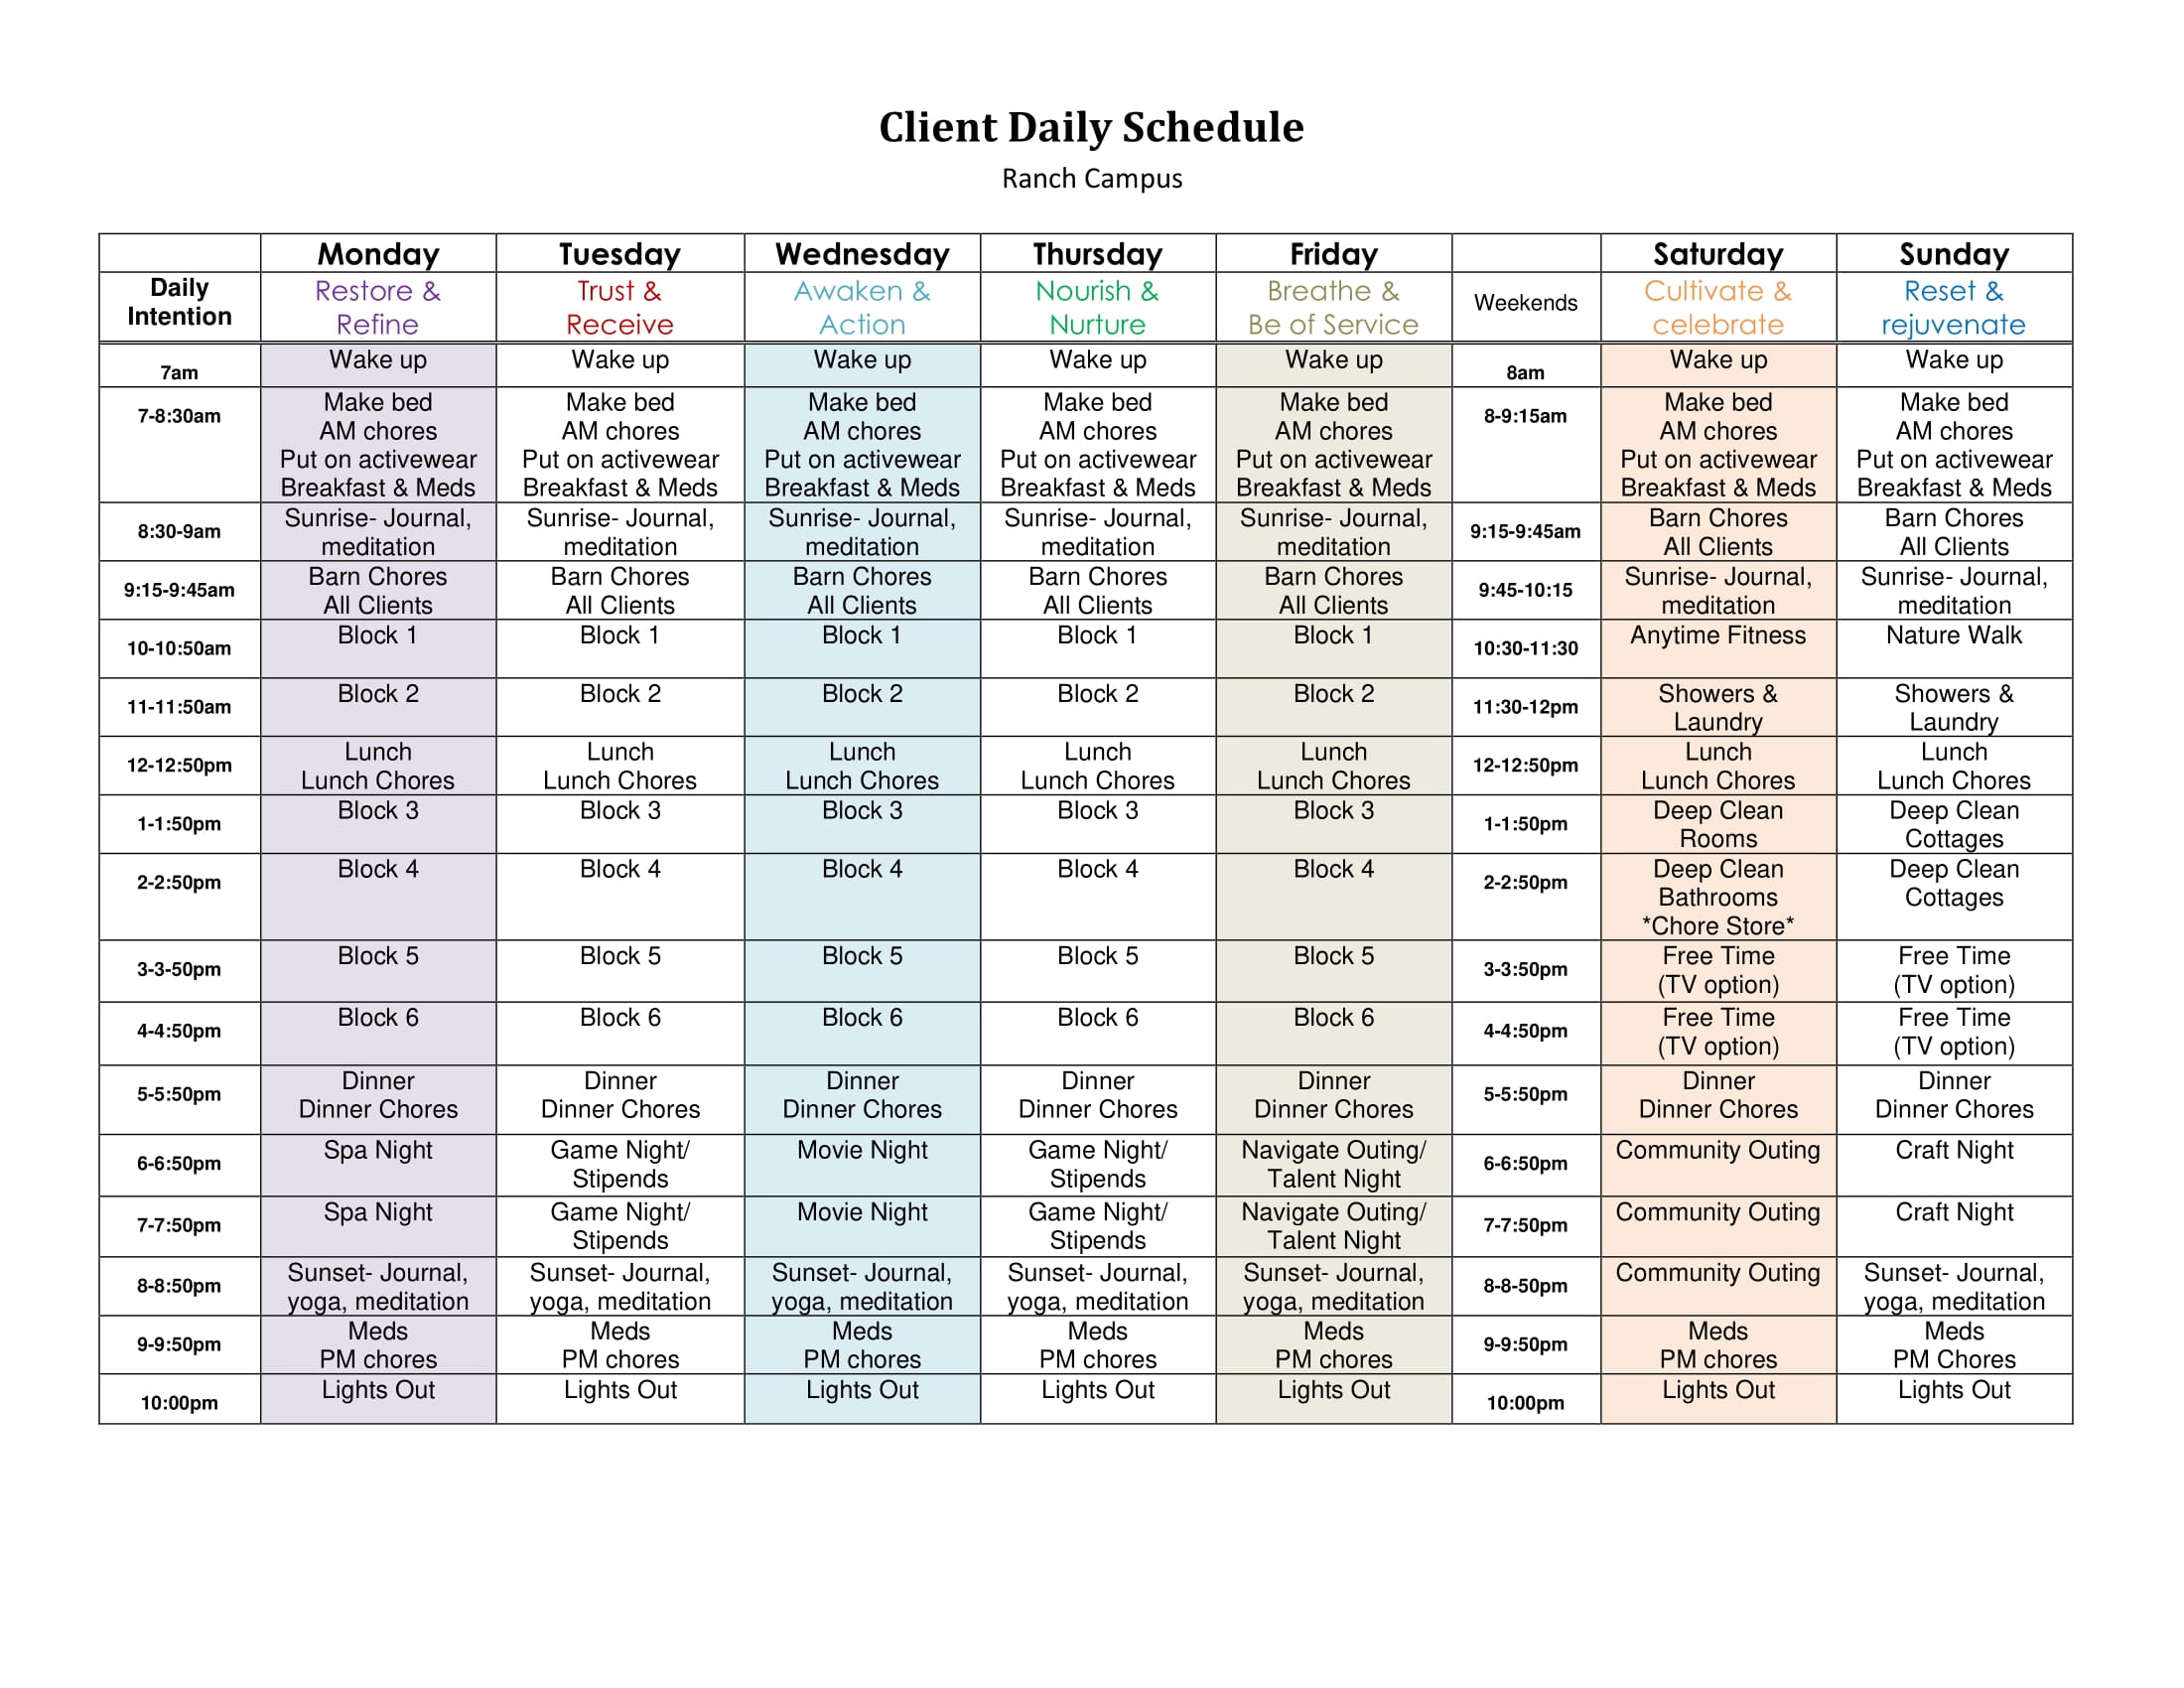 campus schedule